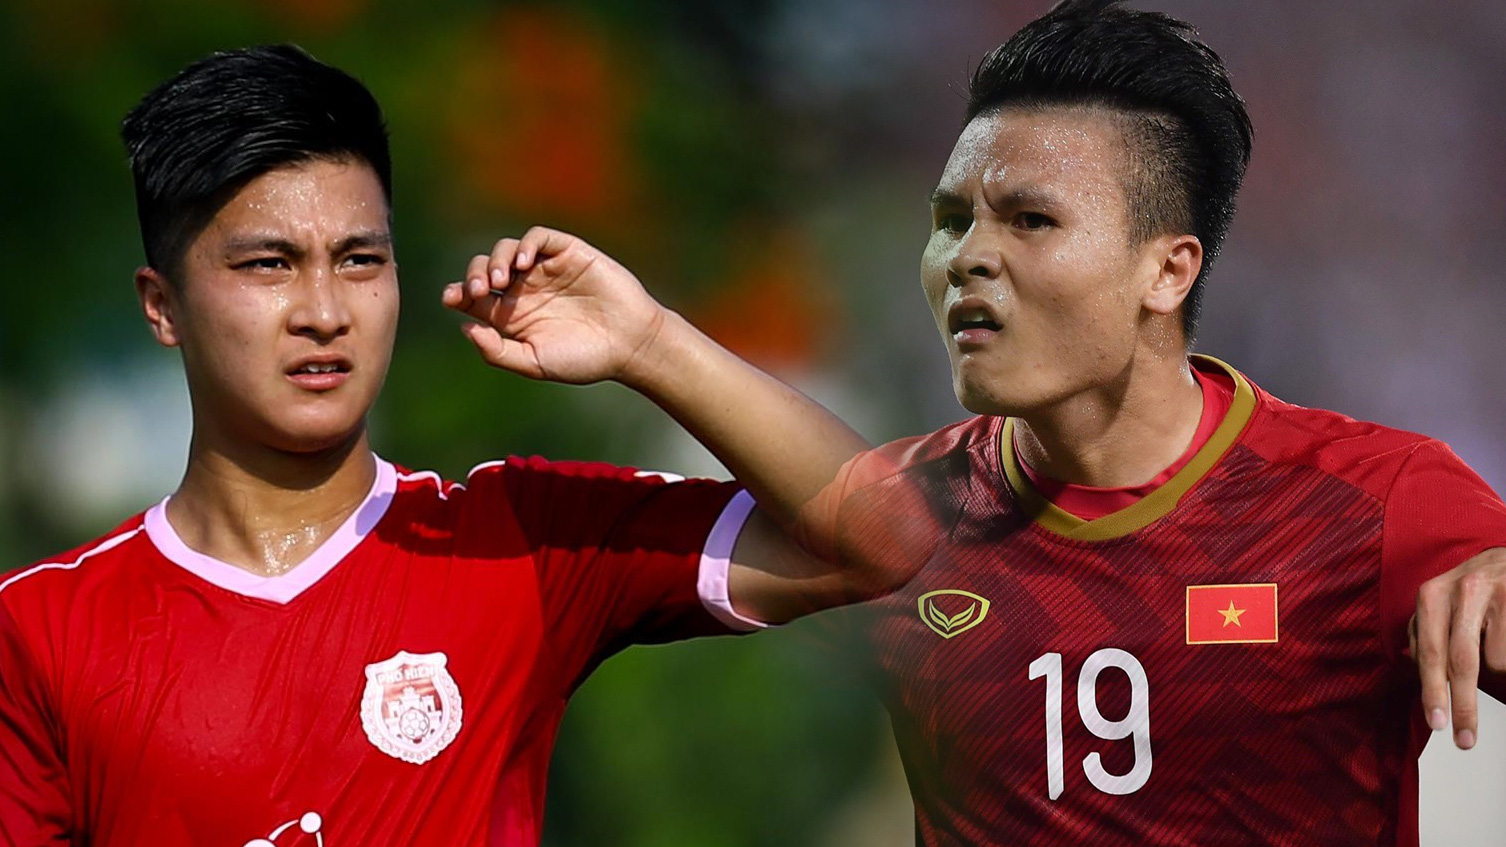 Điểm danh những ngôi sao sân cỏ khuấy đảo bóng đá Việt Nam 2020